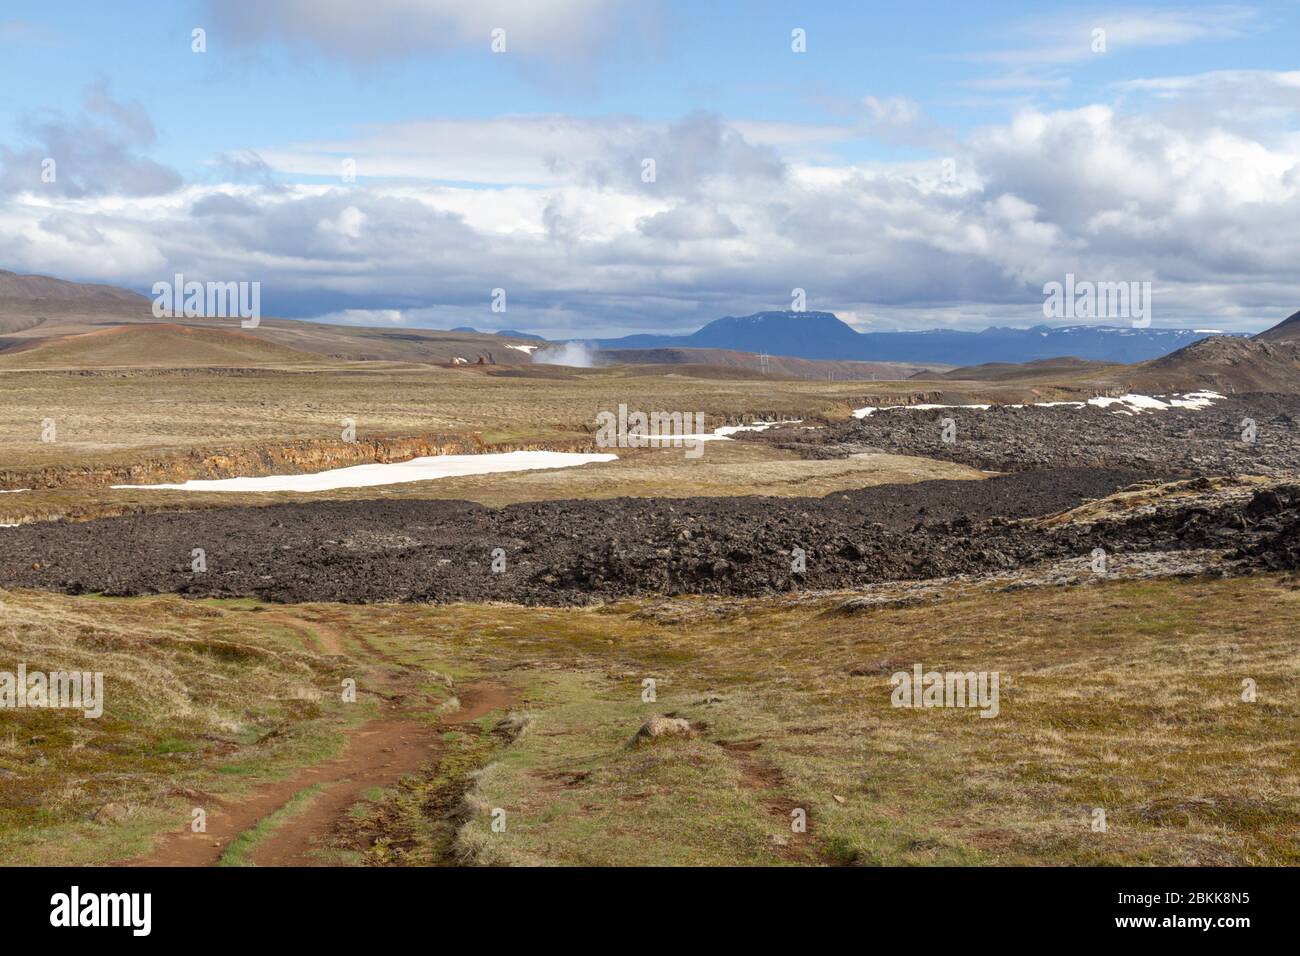 Contraste de la zona intacta por un flujo de lava reciente (últimos 30 años) (mirando al sur) en la zona volcánica de Kraflla cerca de Mývatn, Islandia. Foto de stock